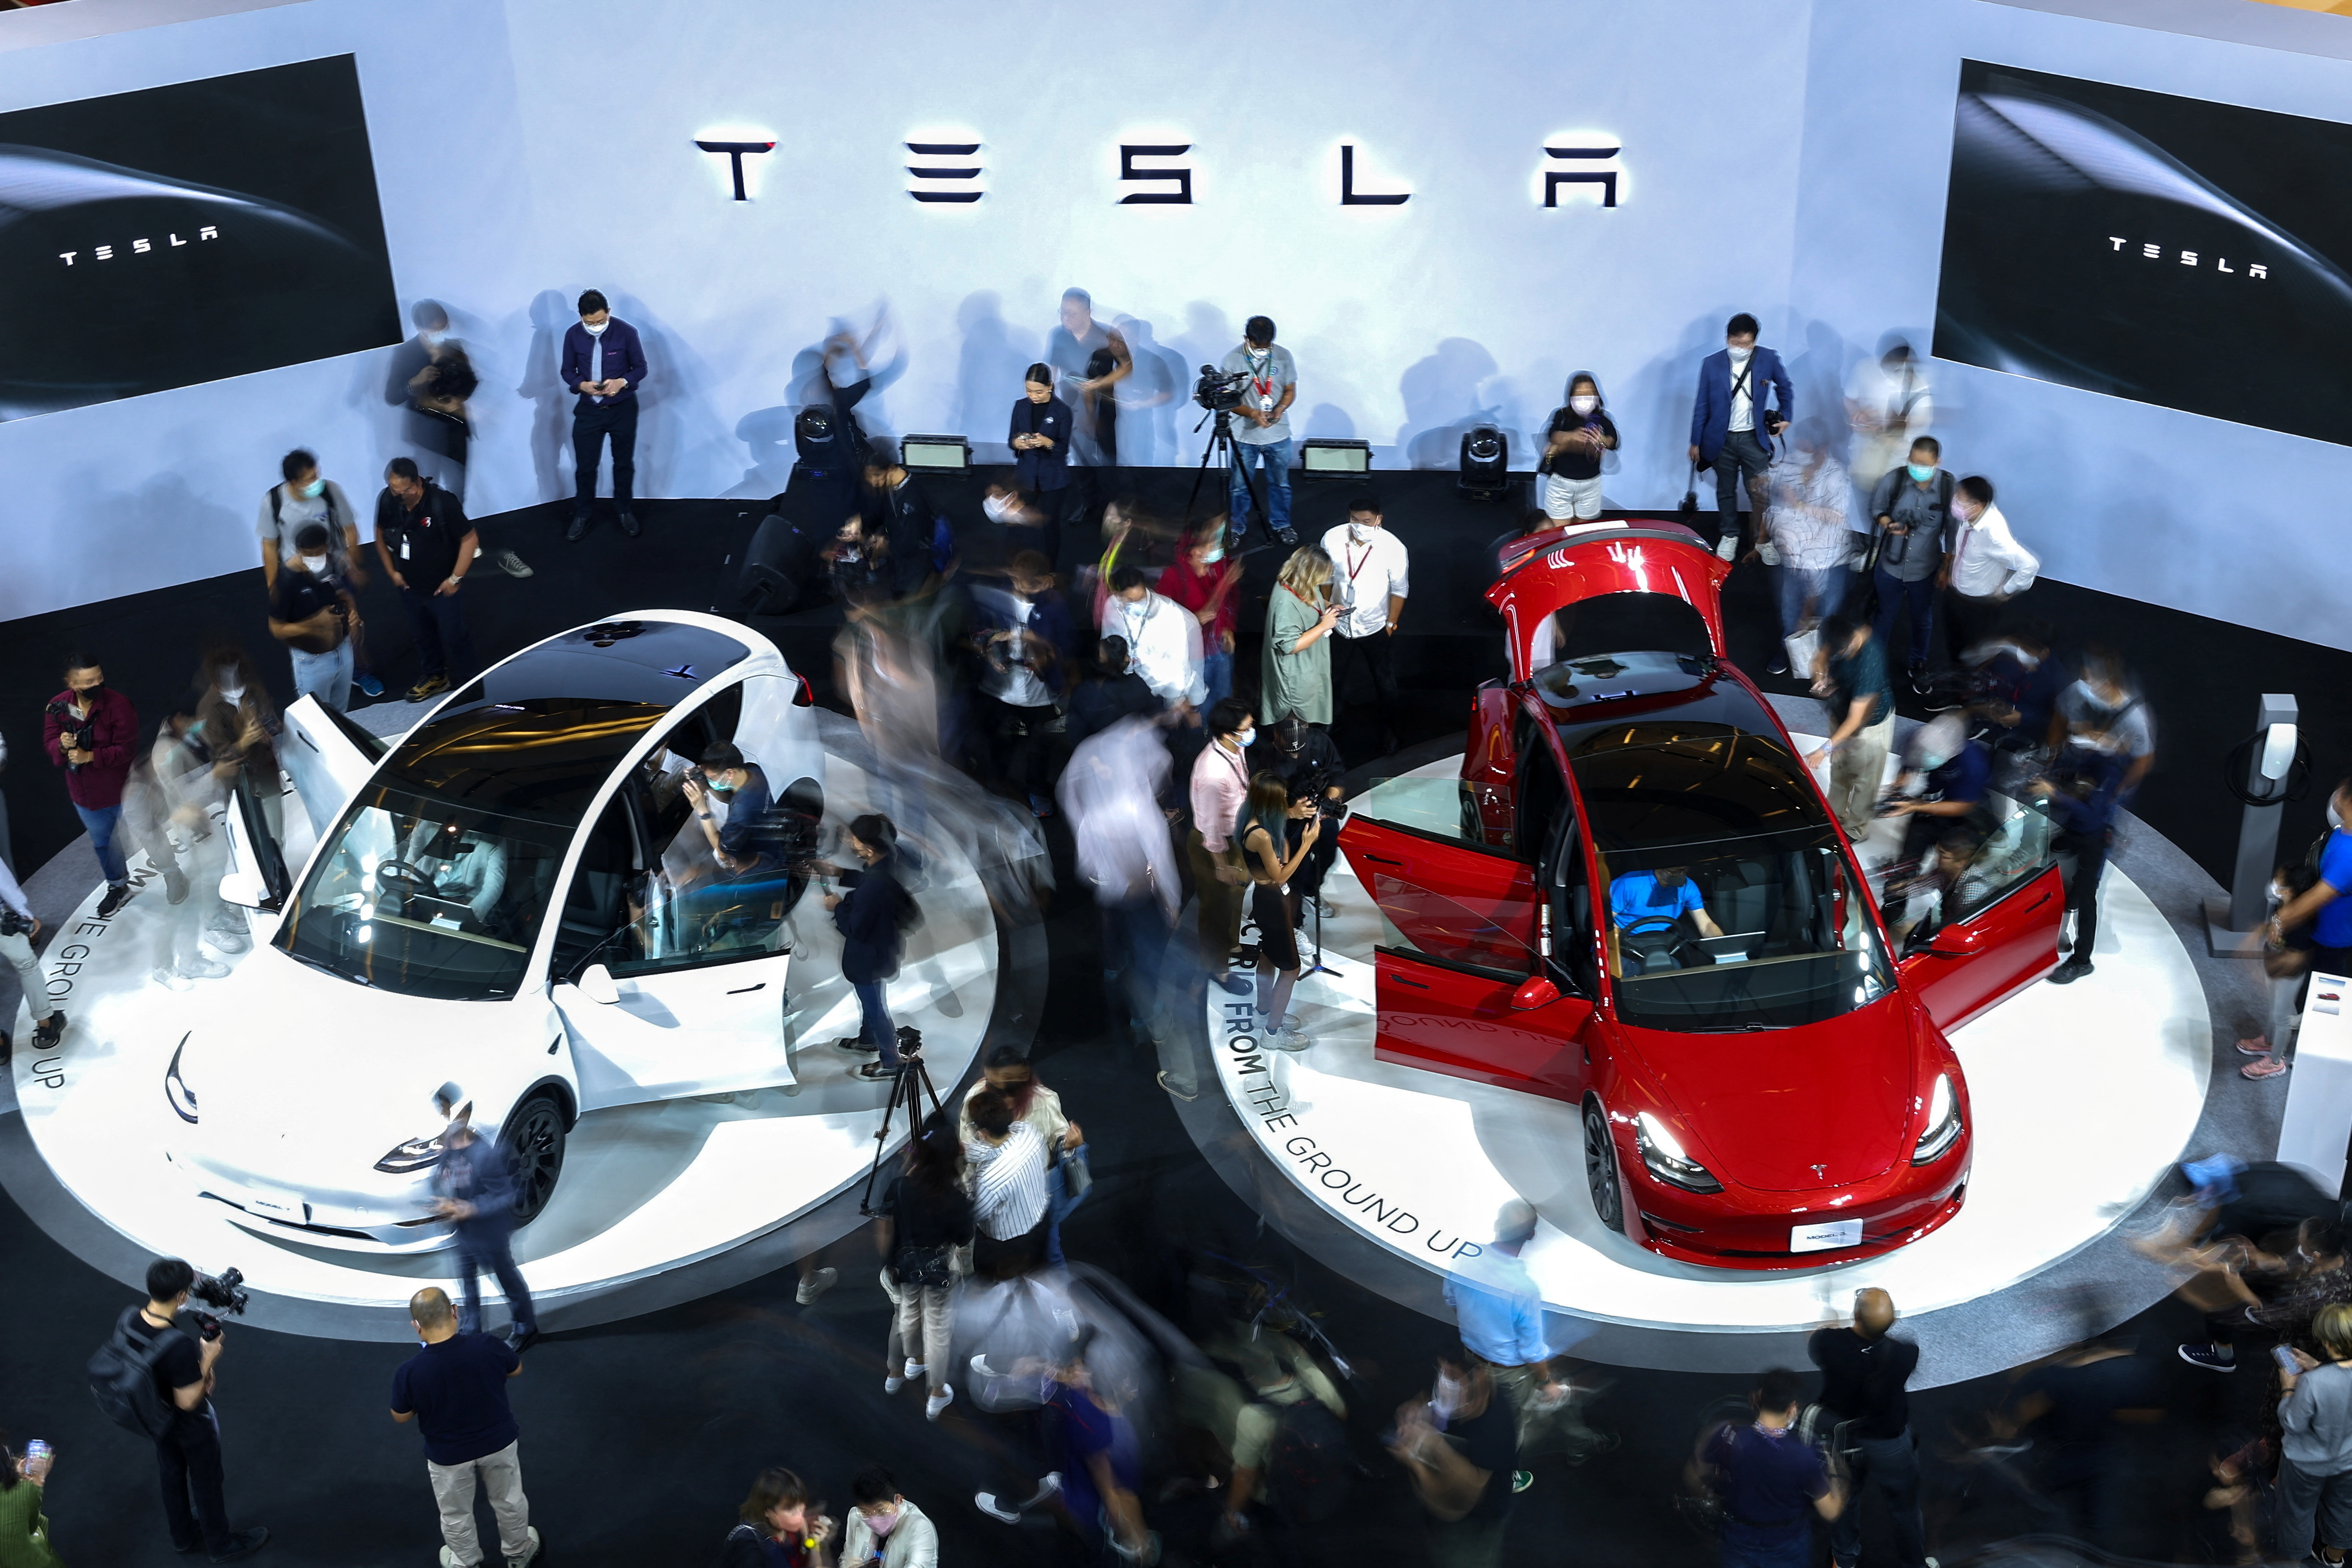 Tesla marca oficialmente su primera empresa comercial en Tailandia